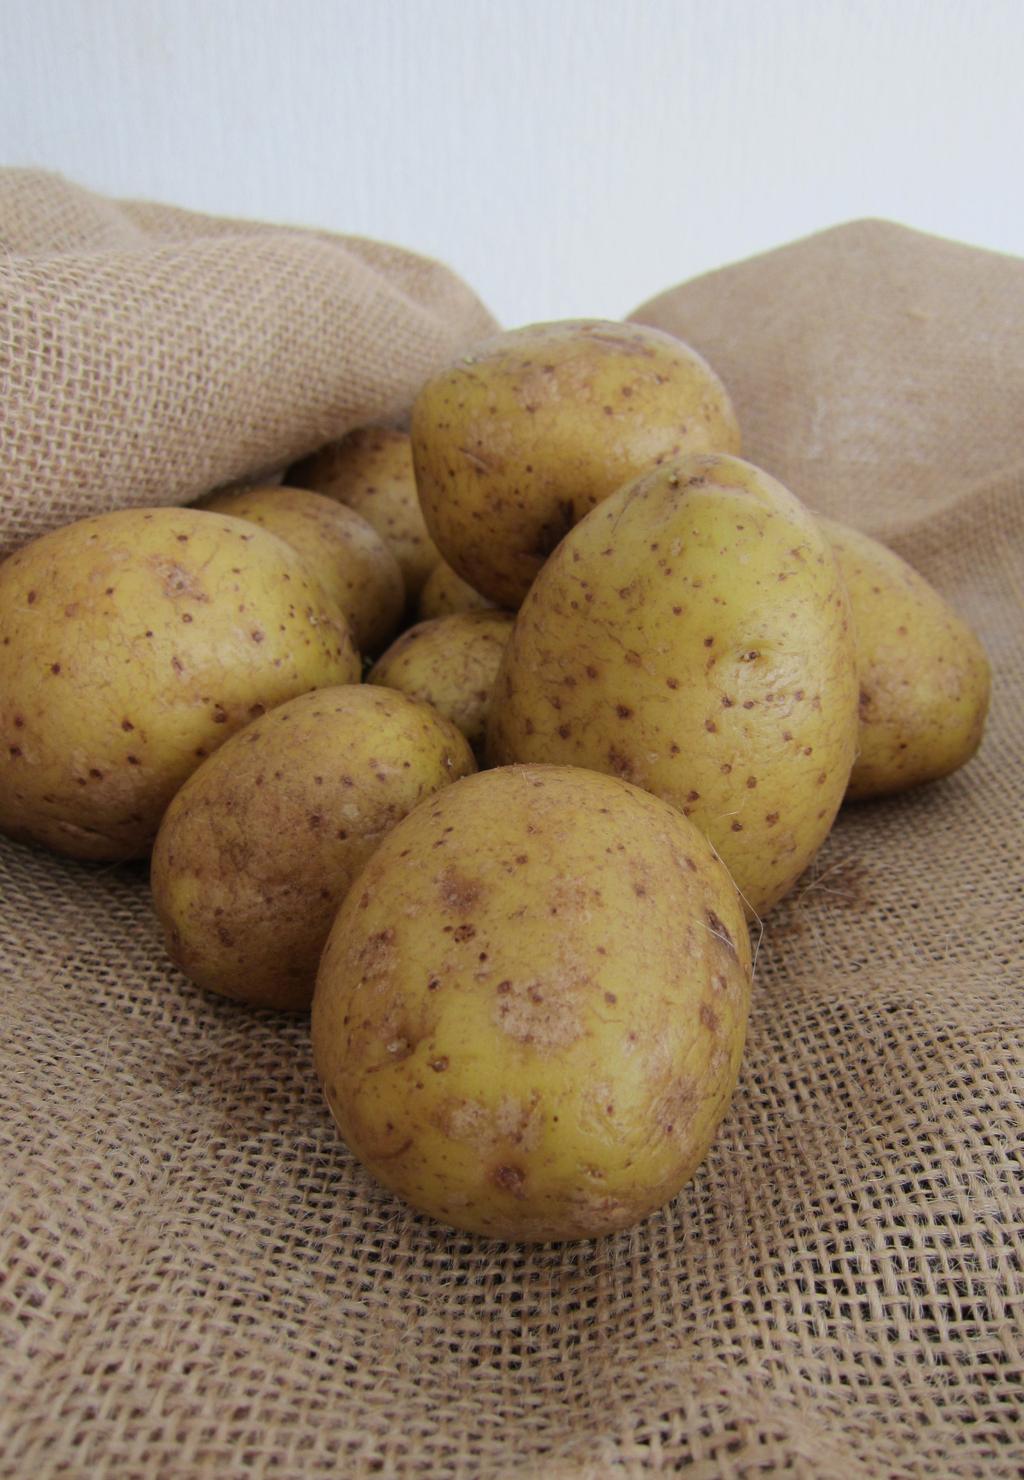 Das erwartet Sie an unserem verkaufsoffenen Wochenende am 10. und 11. September während des Kartoffelmarktes.